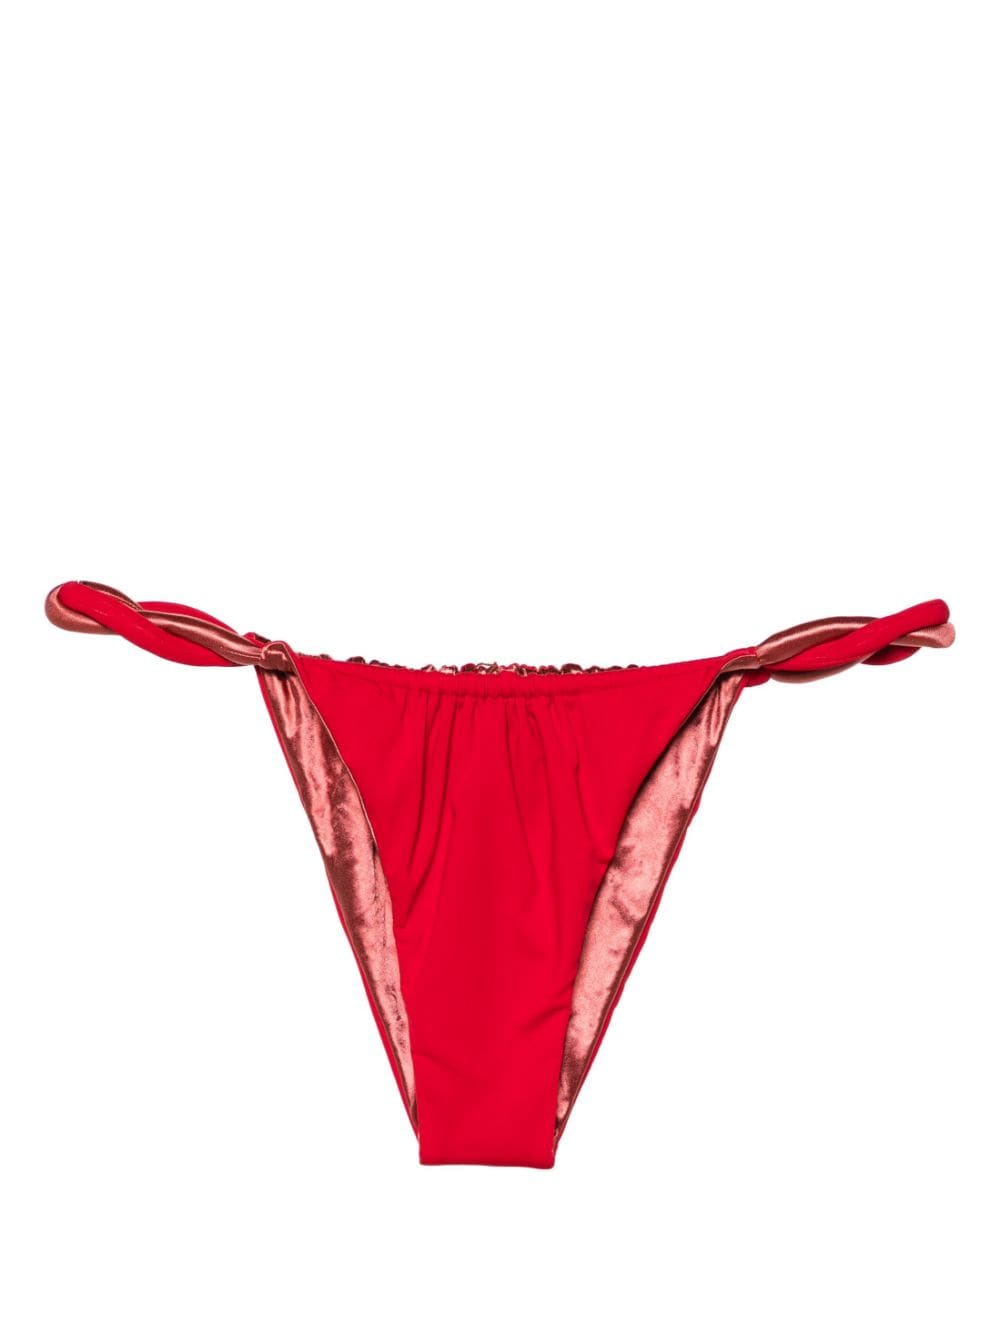 Isa Boulder Chunky Rope reversible bikini bottoms - Red von Isa Boulder